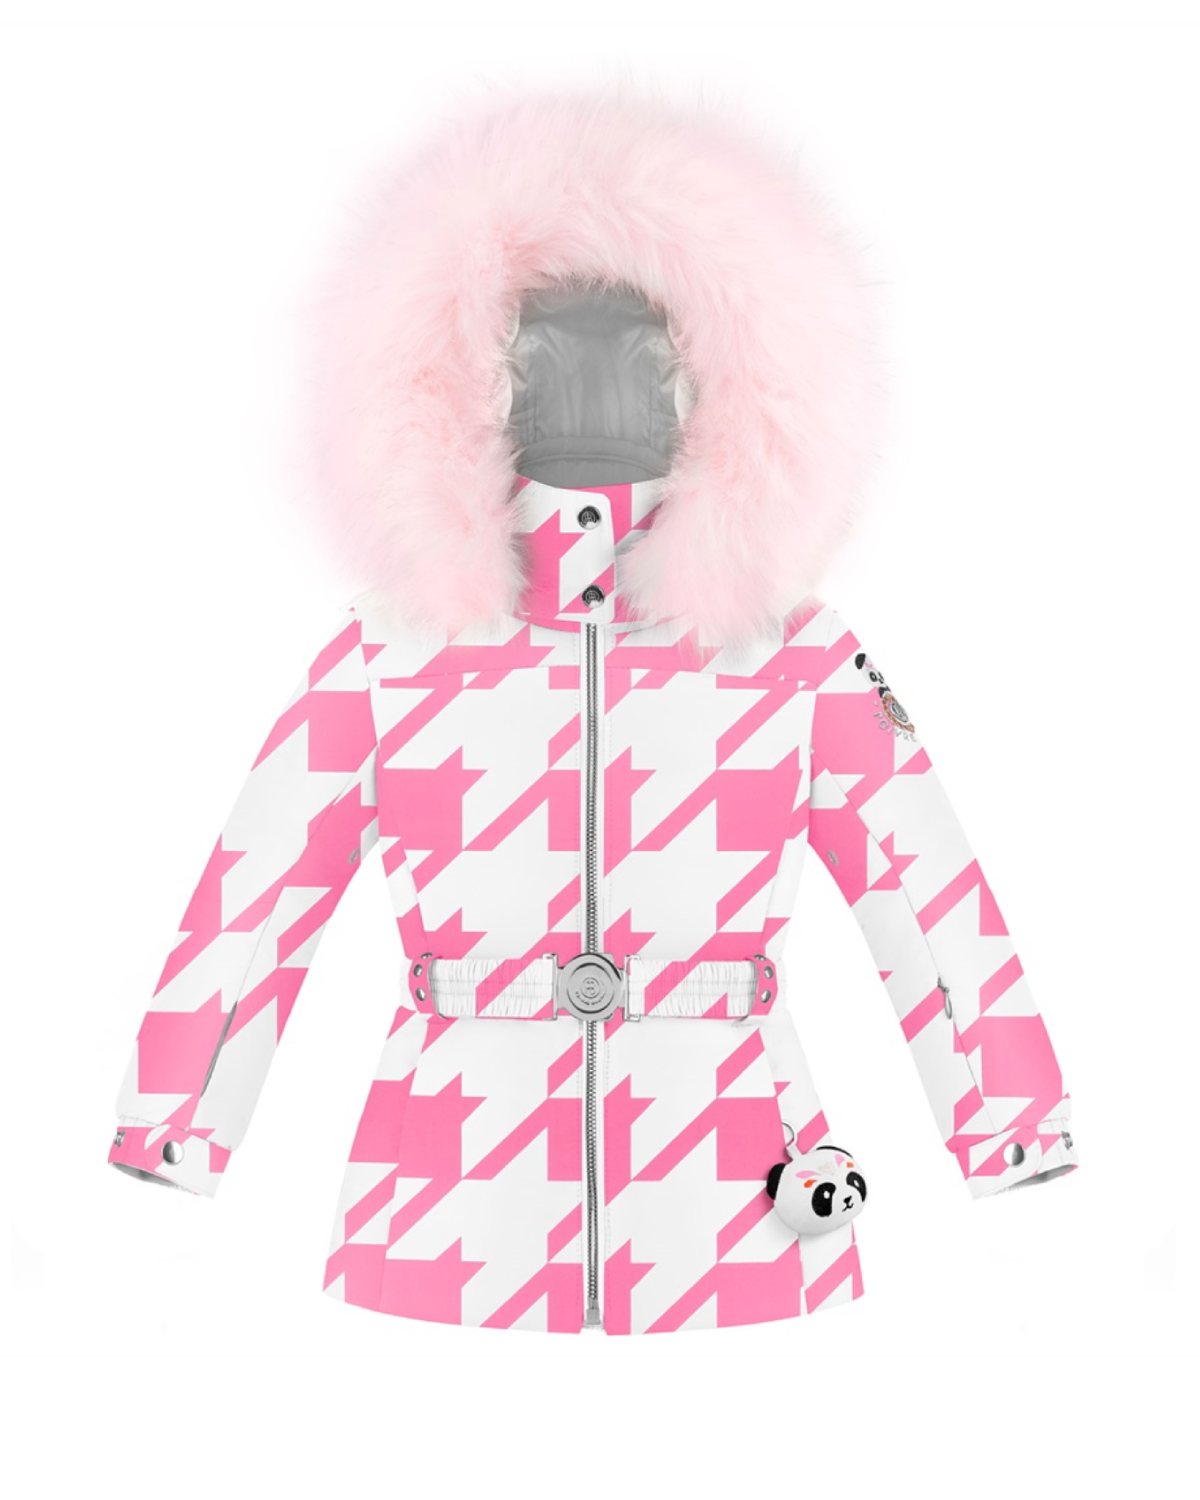 Poivre Blanc Kids Ski Jacket in Pink (Ages 4 - 6)